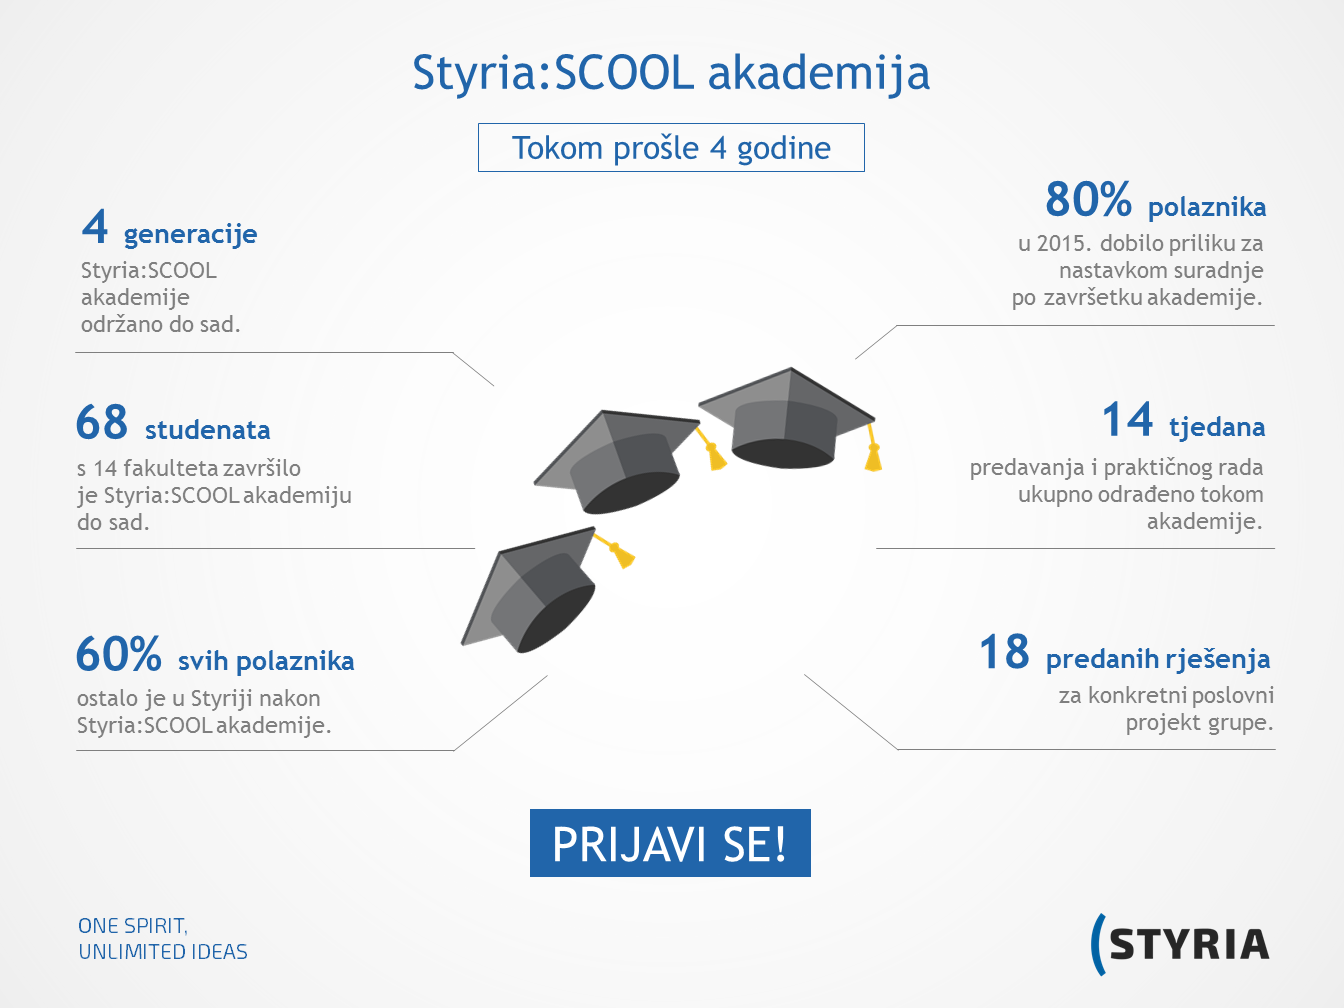 Osvoji stipendiju ili priliku za rad u Styria:SCOOL akademiji